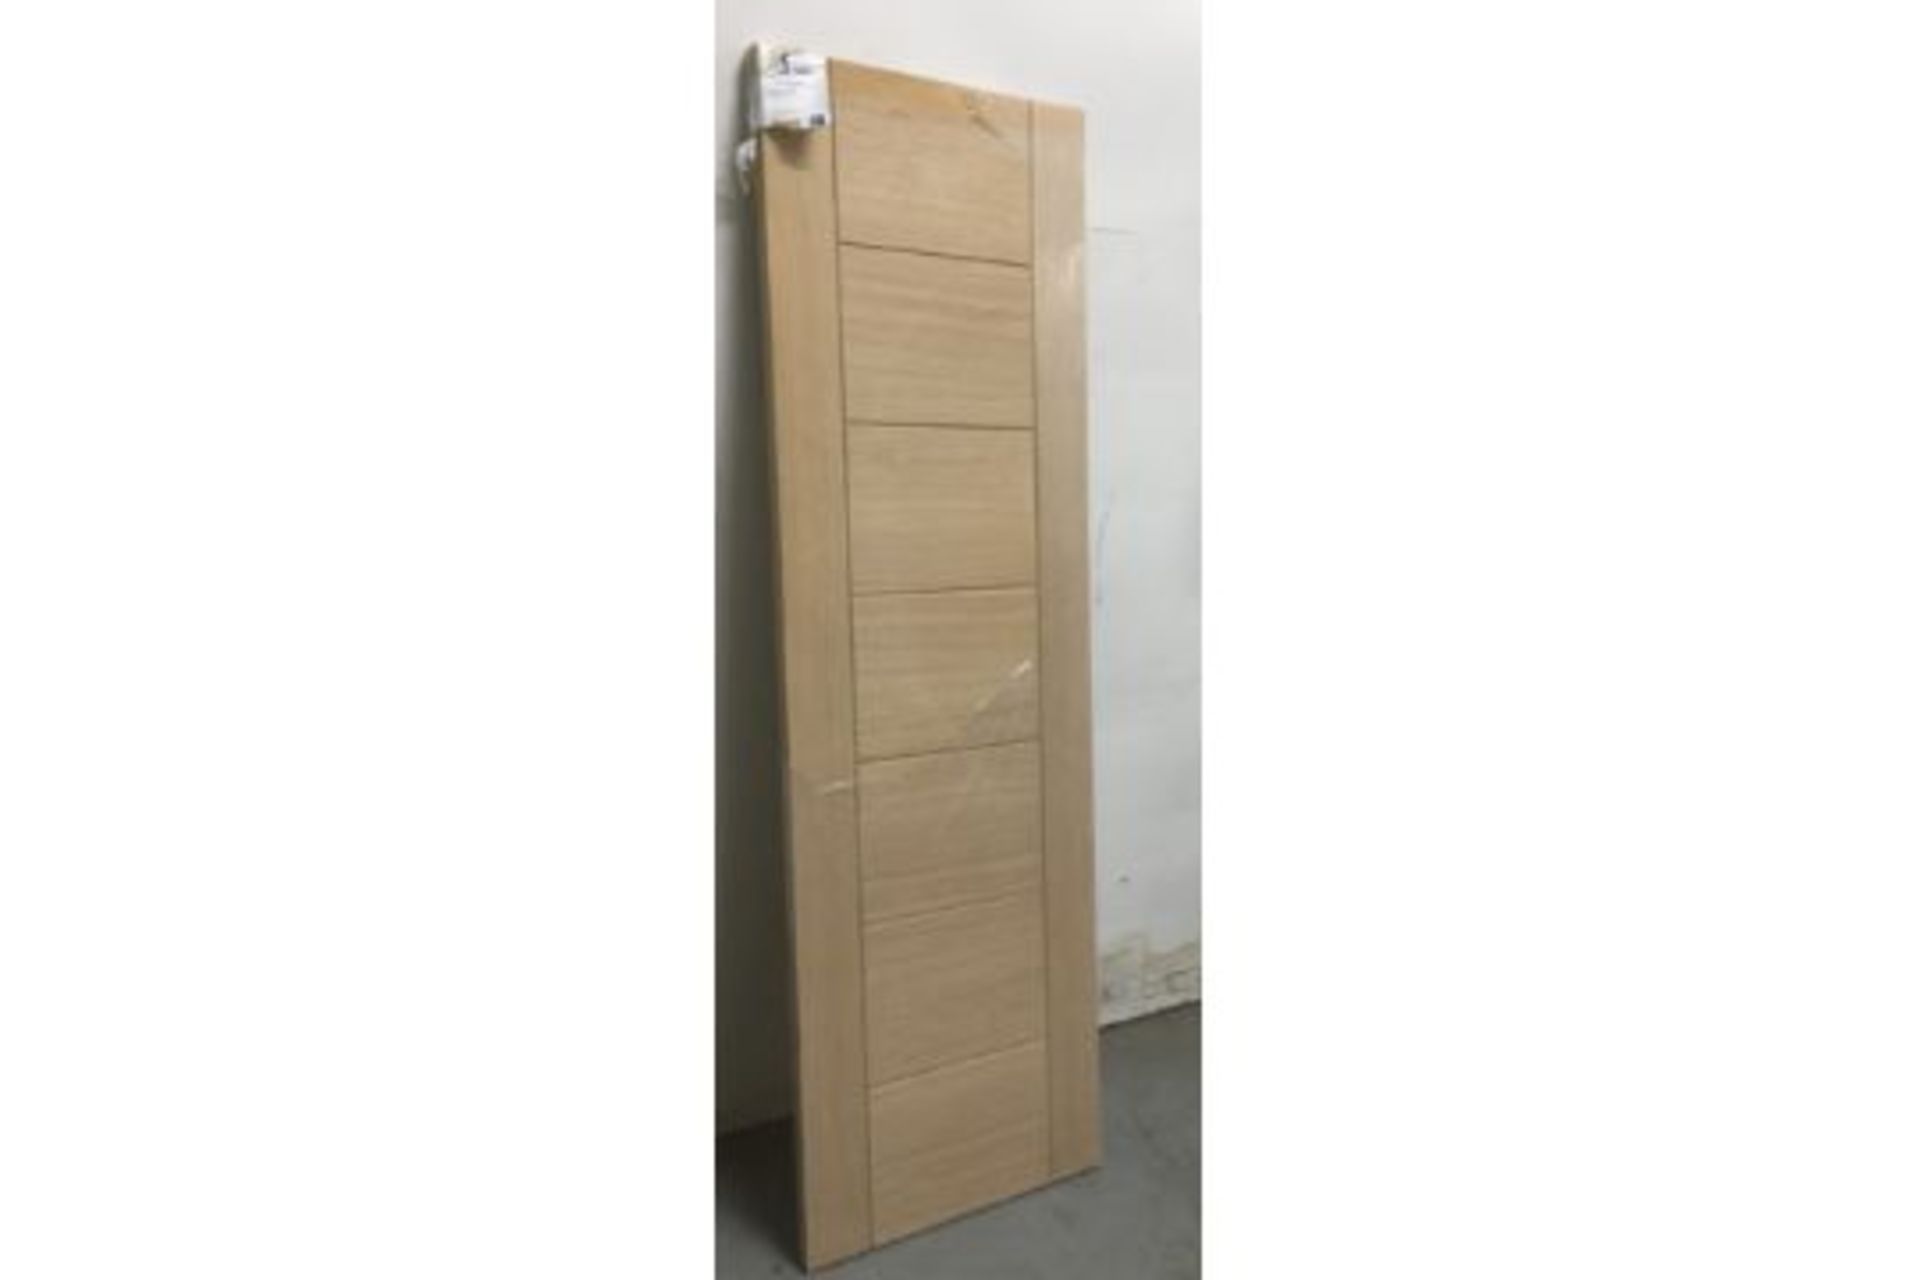 XLJoinery Palermo Internal Oak Door | INTOPAL626 | 2040mm x 626mm x 40mm - Image 2 of 3